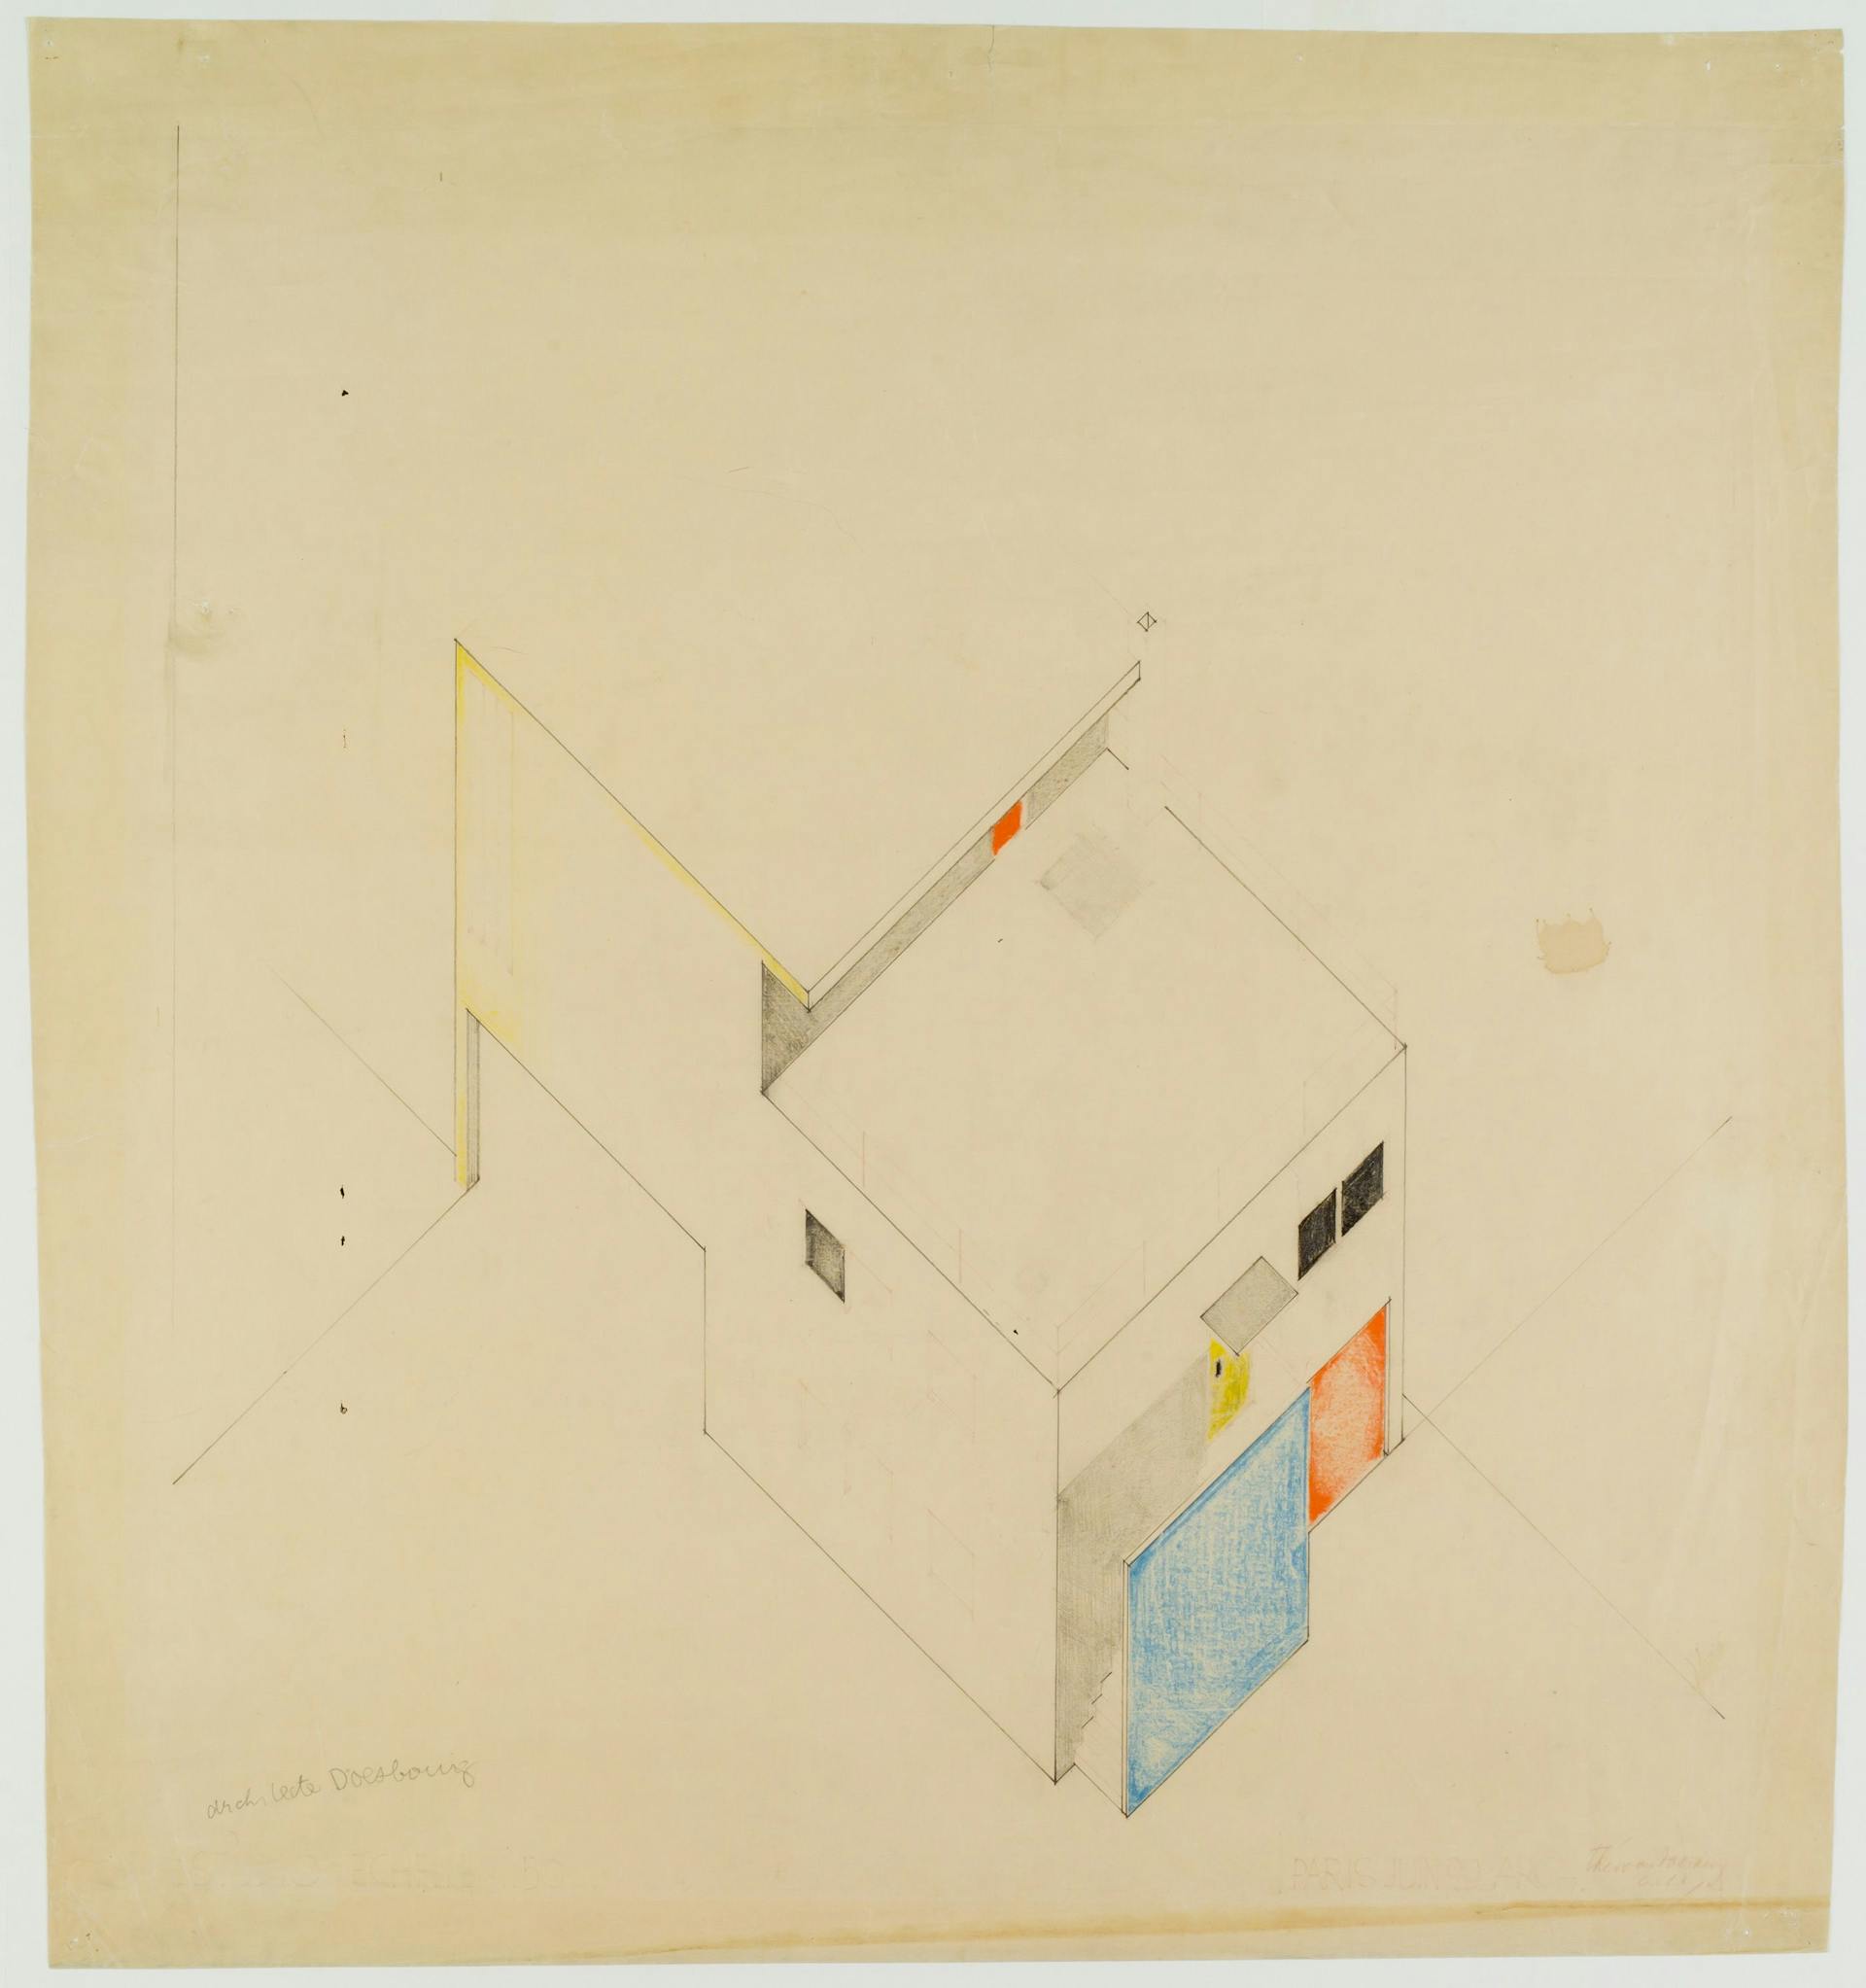 Theo van Doesburg. Ontwerp voor de atelierwoning Meudon-Val-Fleury, 1929. Collectie Het Nieuwe Instituut, DOES AB5359. Gift Van Moorsel. 